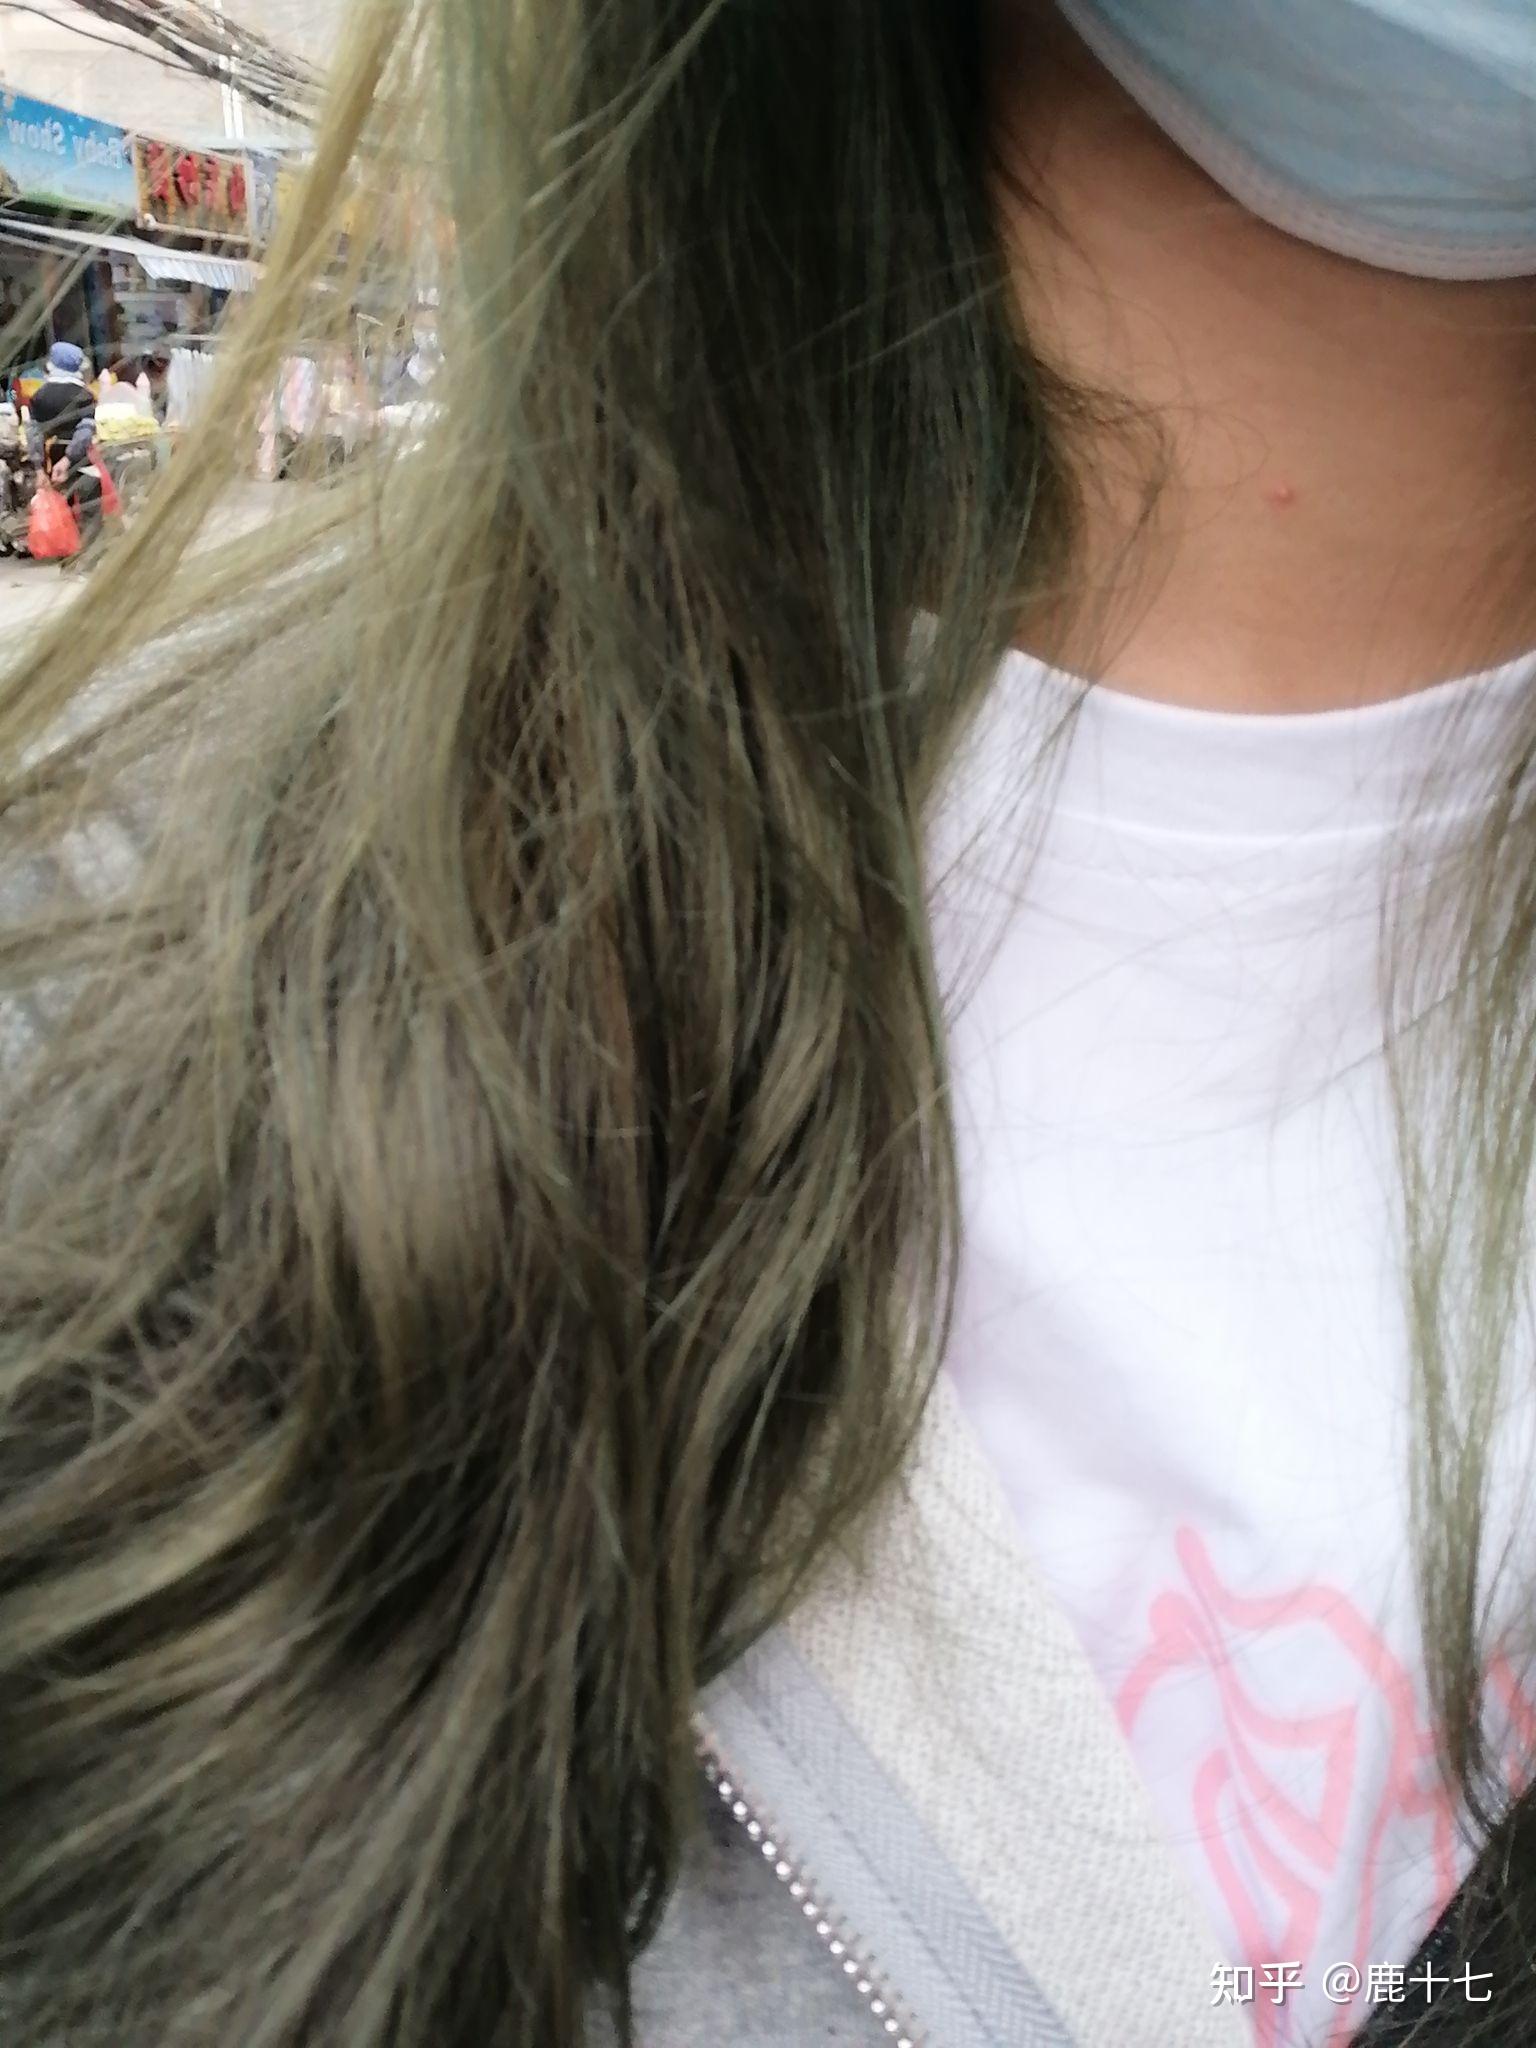 绿色头发女孩 - 高清图片，堆糖，美图壁纸兴趣社区